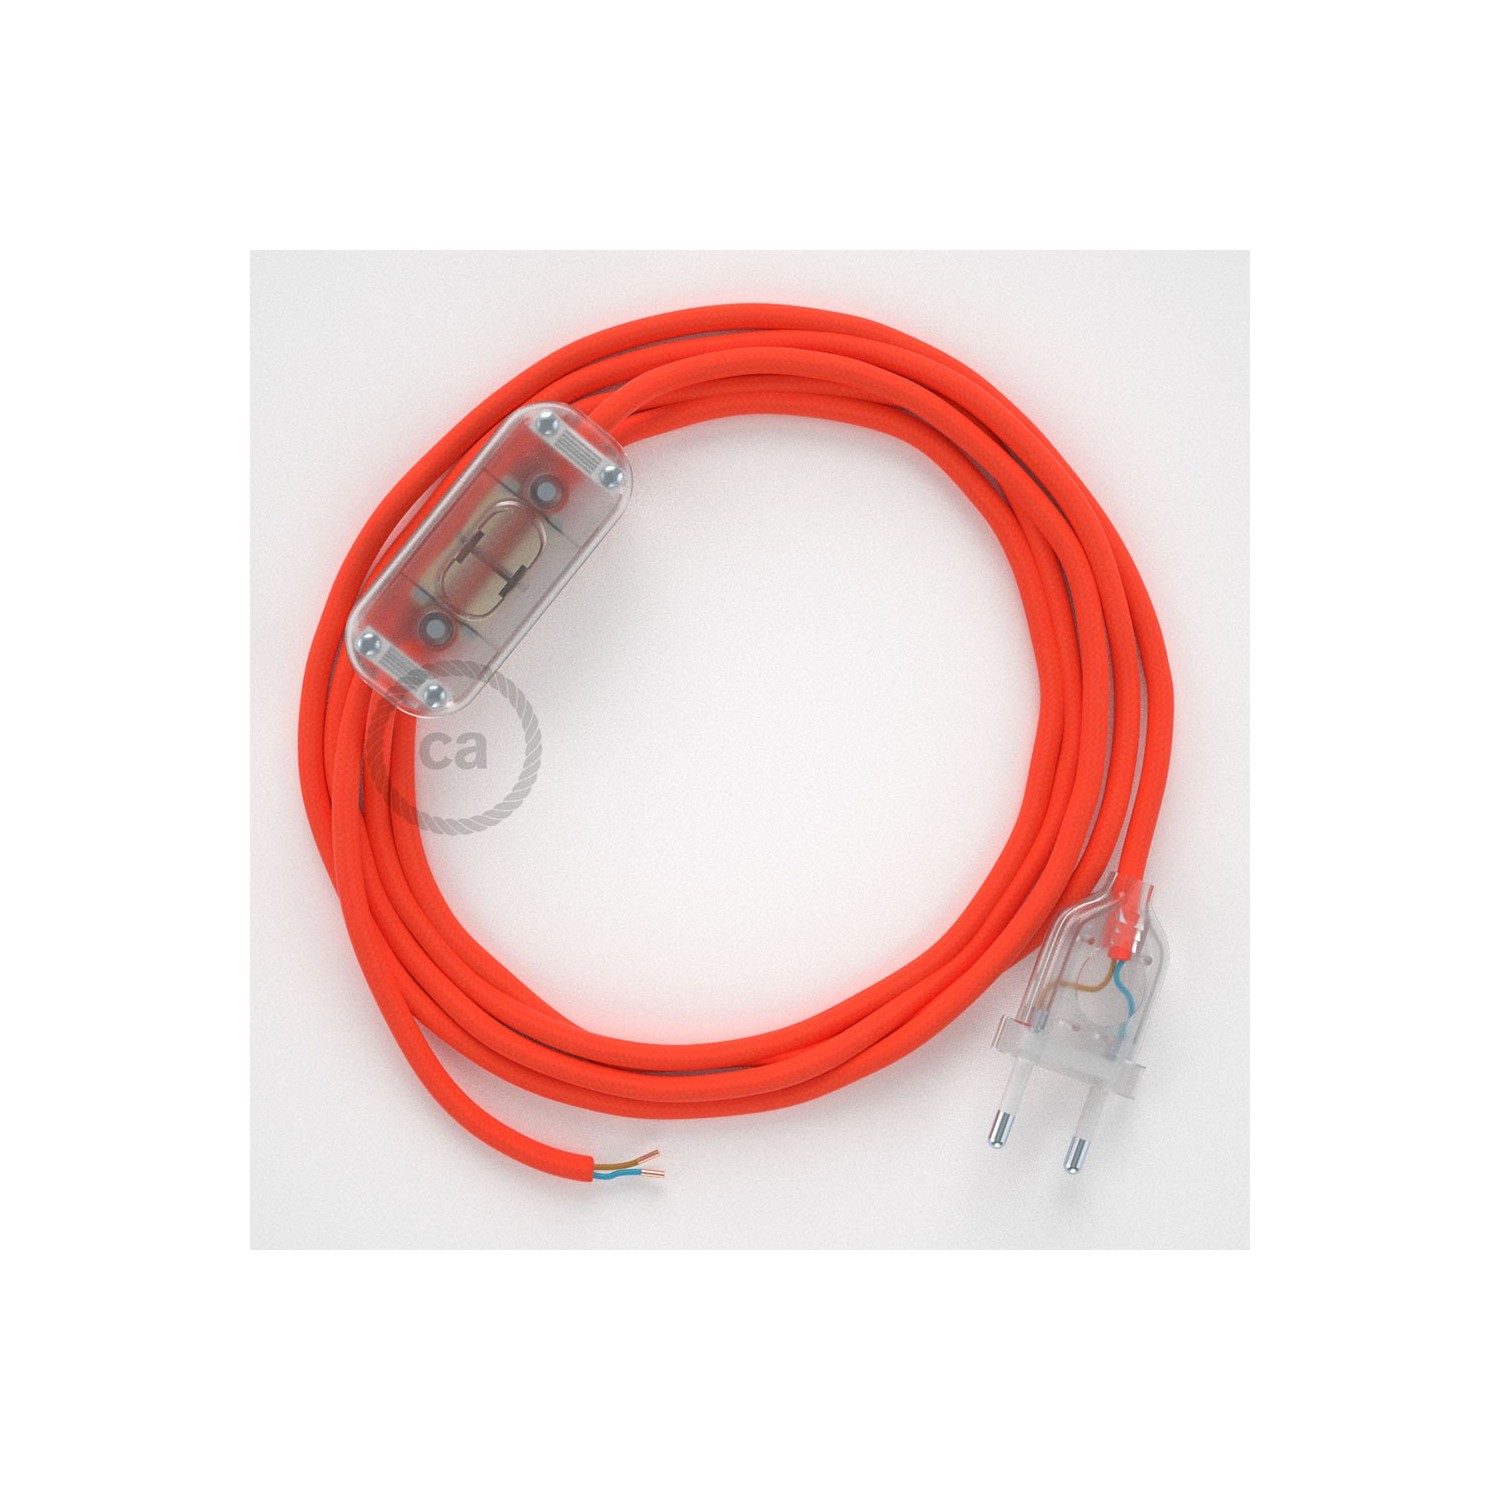 Sladdställ, RF15 Orange Neon Viskos 1,80 m. Välj färg på strömbrytare och kontakt